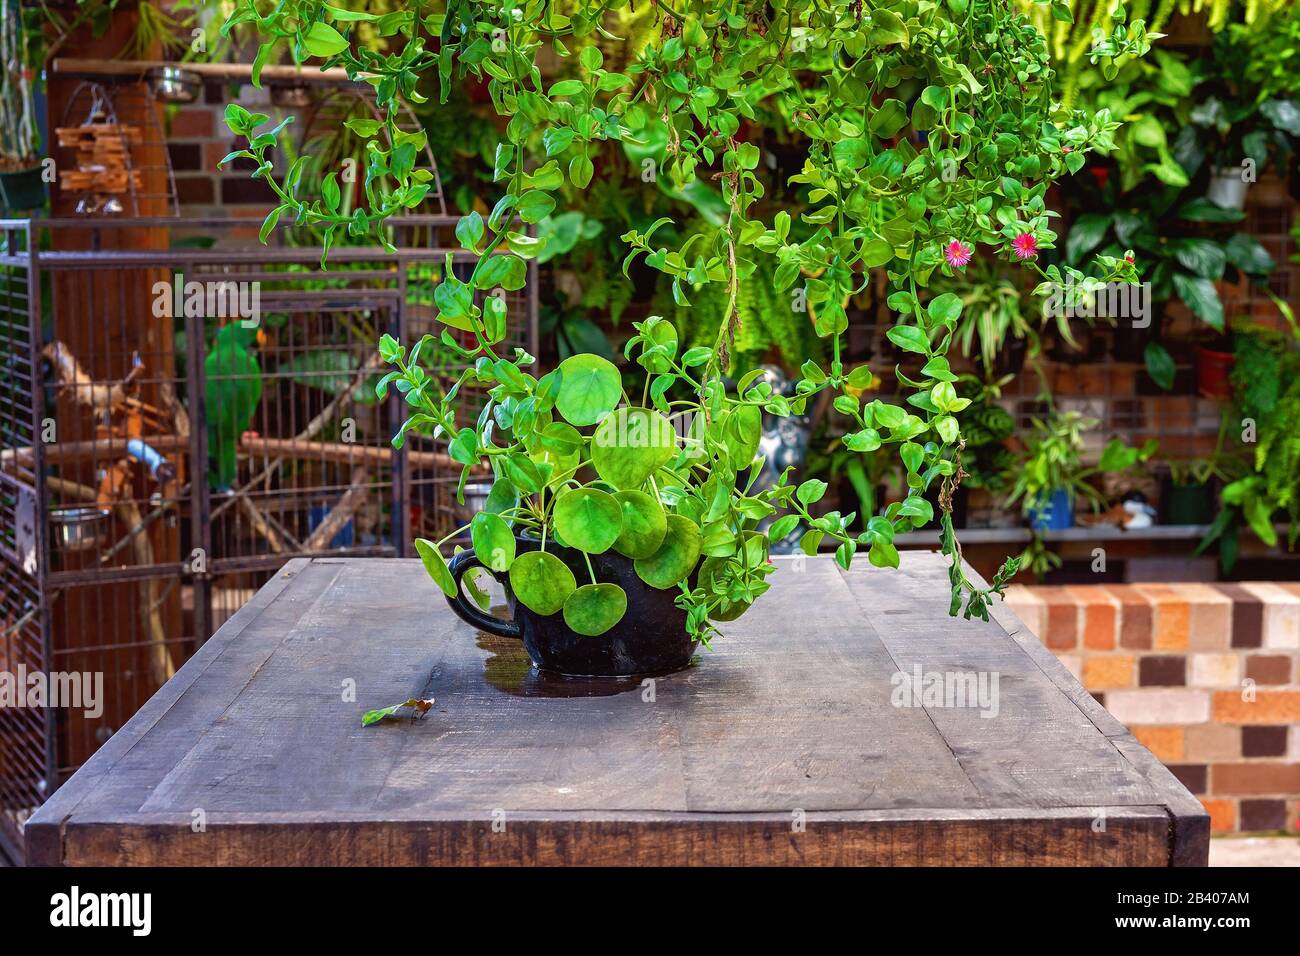 Saludable enredaderas verdes colgantes y una planta de maceta en una antigua mesa de madera frente a una de aves, un ambiente informal para comer en un café restaurante al aire